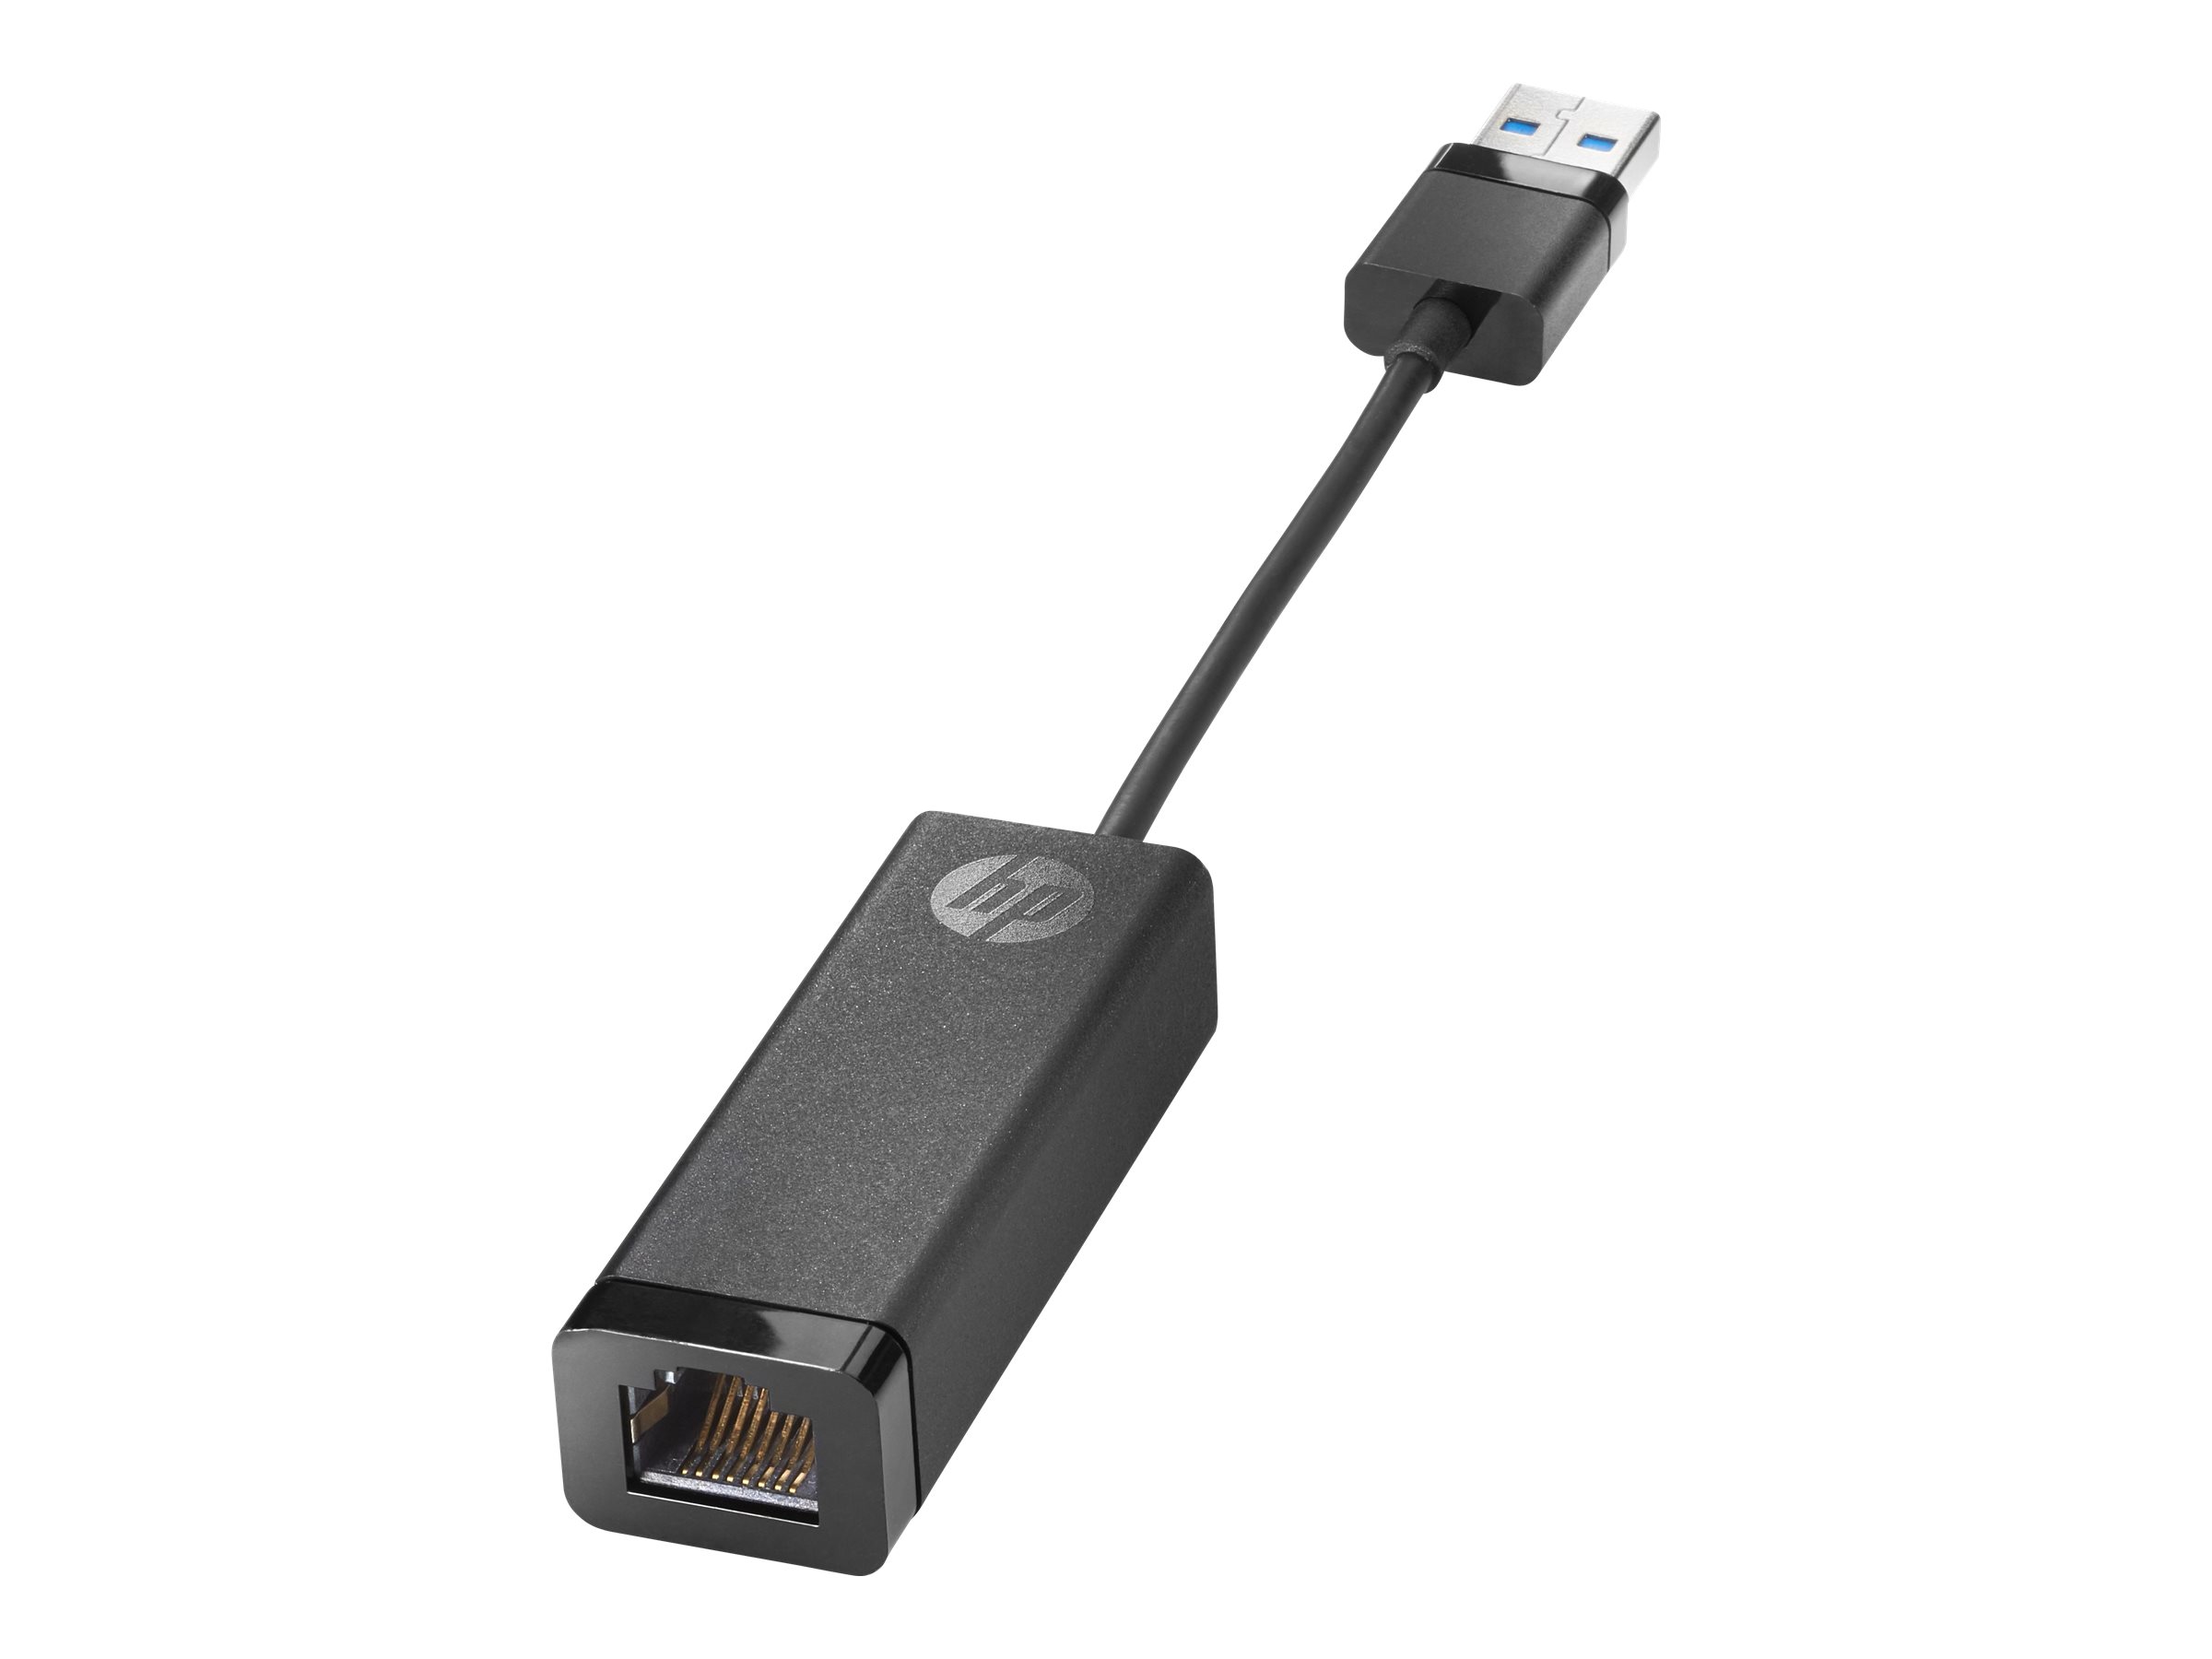 HP USB 3.0 to RJ45 Adapter G2 - Netzwerkadapter - USB 3.0 - Gigabit Ethernet x 1 (Packung mit 120) - für HP 250 G9 Notebook